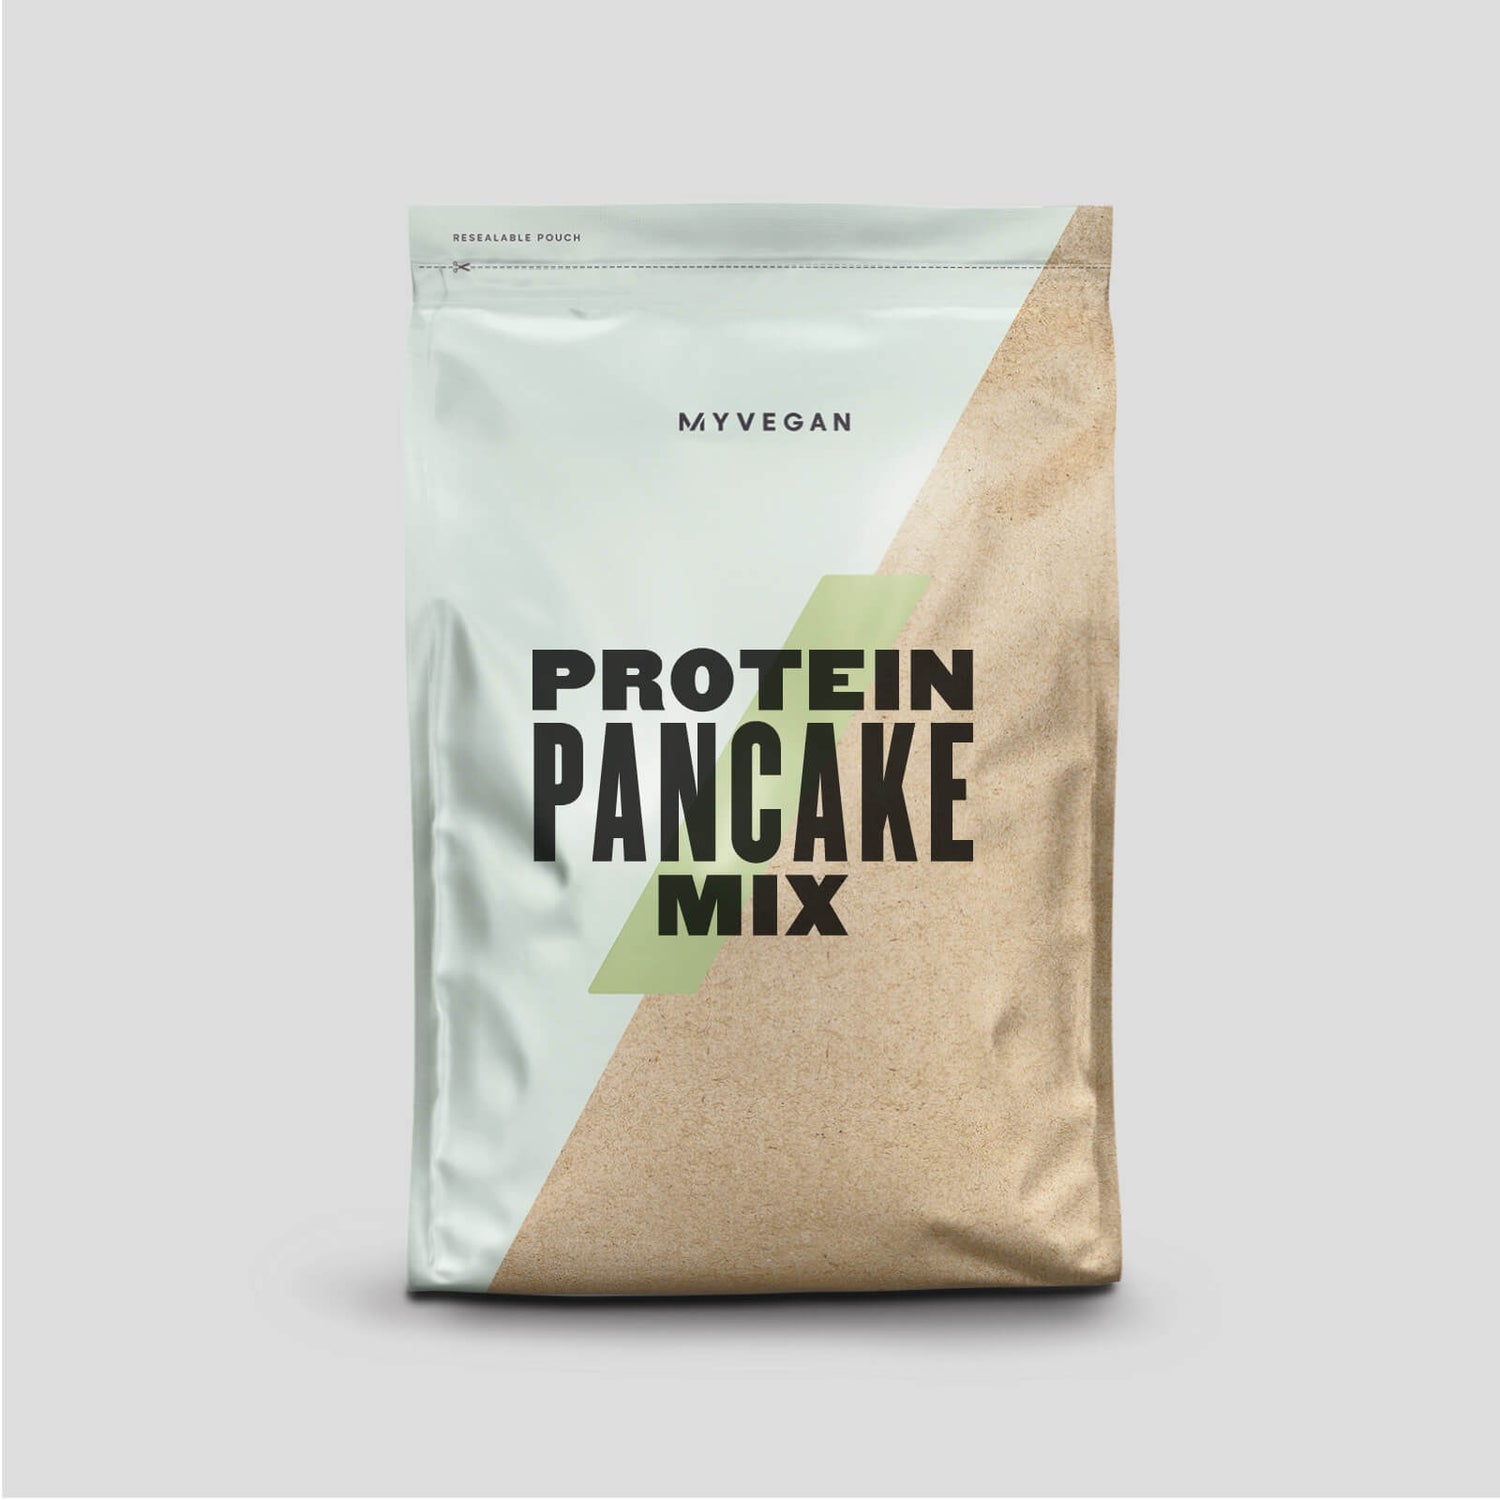 Vegan Pancake Mix